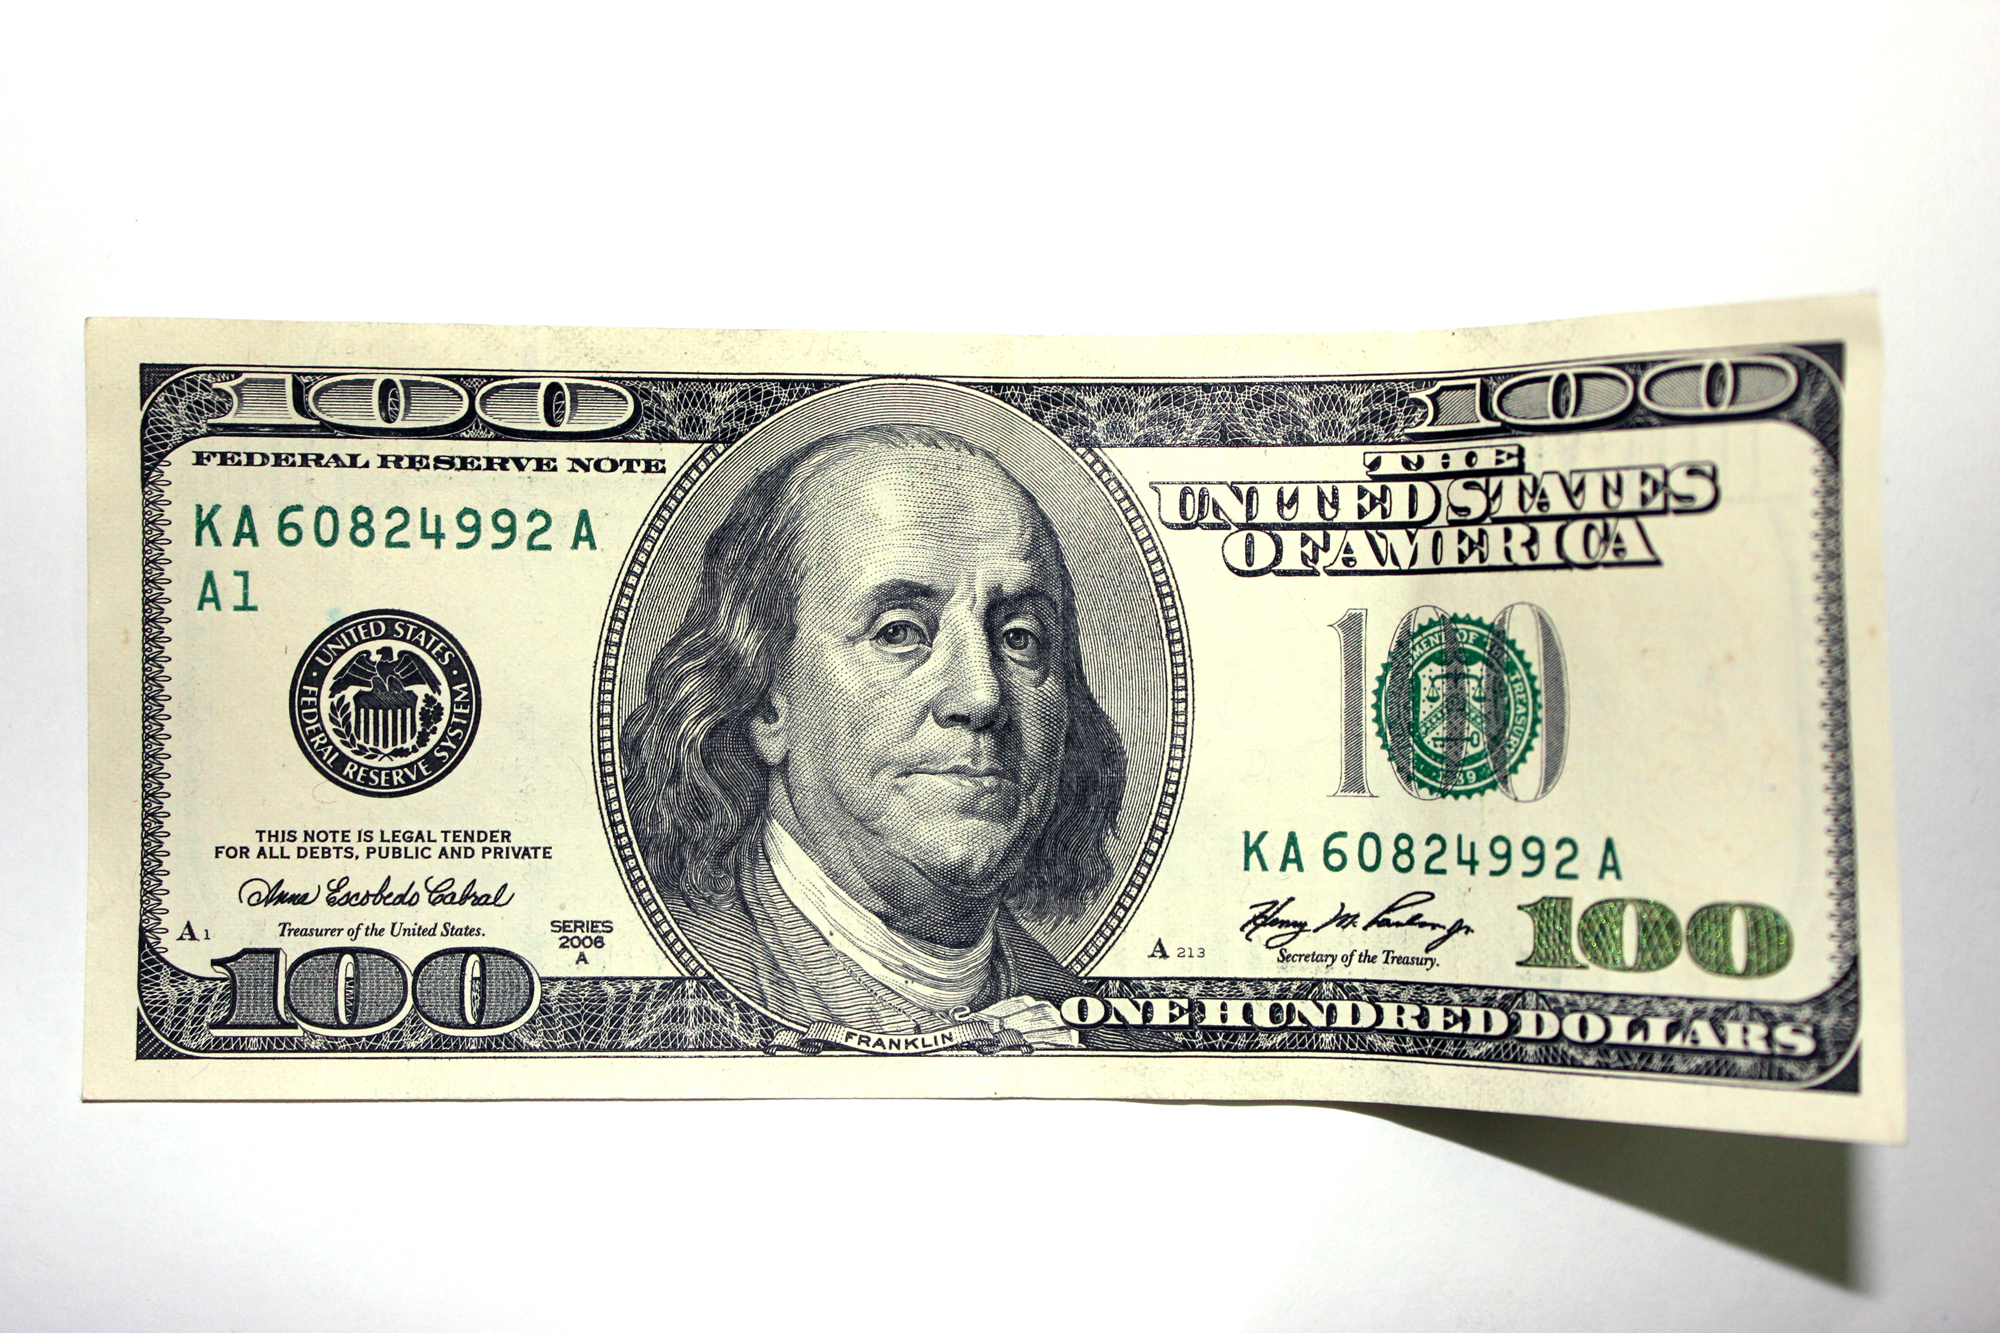 U.S. dollar note: Hãy chiêm ngưỡng hình ảnh tờ tiền USD với thiết kế đẹp mắt, sự trau chuốt đến từng chi tiết và những tính năng an ninh cao cấp để đảm bảo tính xác thực và chống giả mạo.